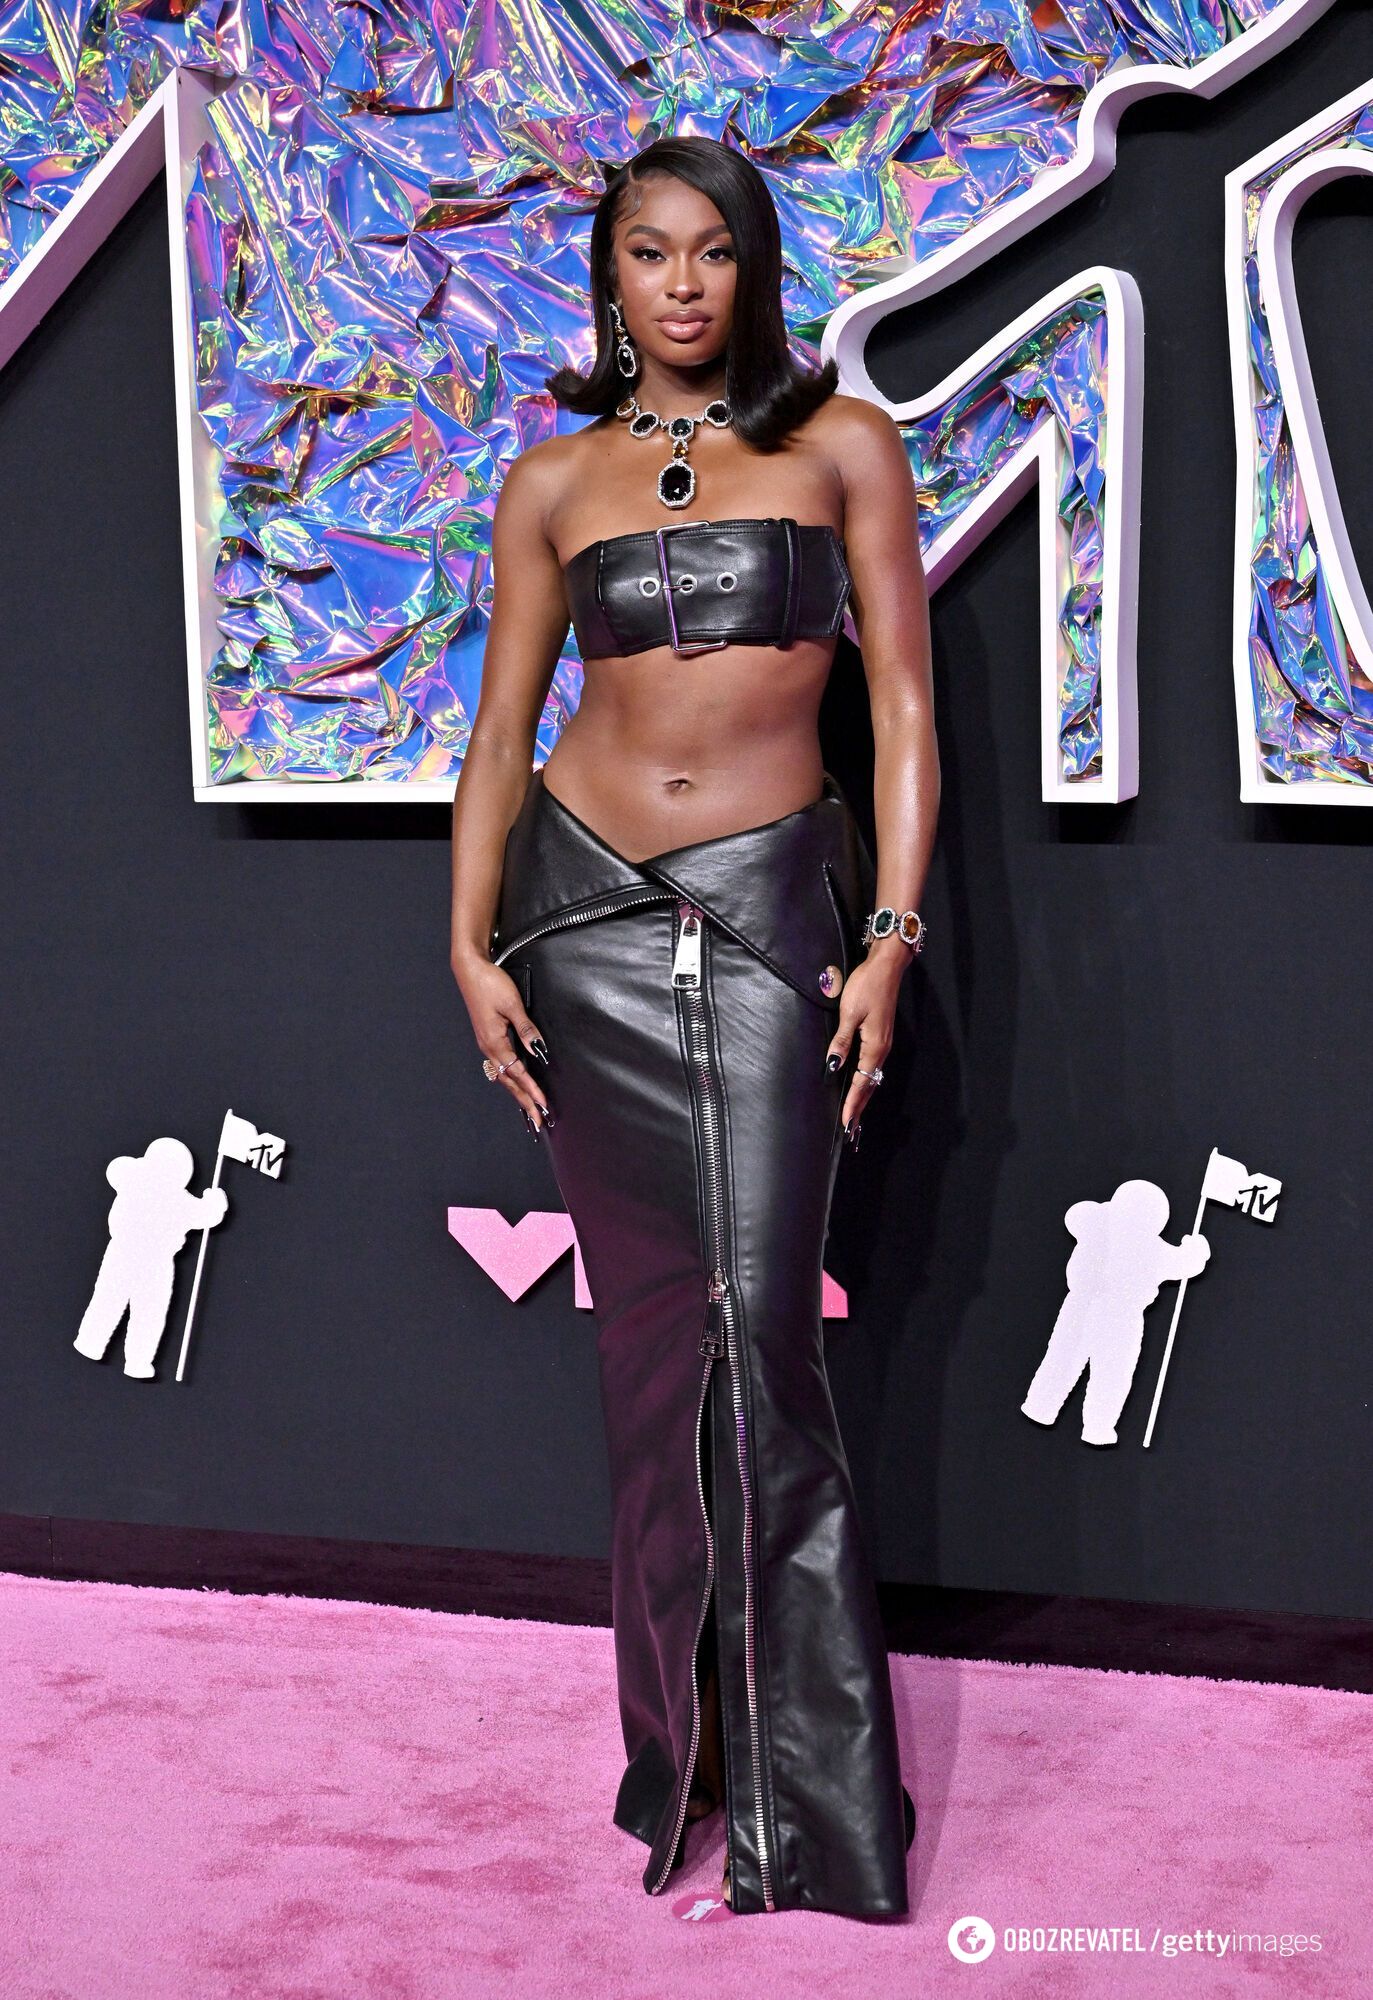 Наряды из паутины и полупрозрачные платья: звезды поразили откровенными образами на красной дорожке MTV VMA 2023. Фото